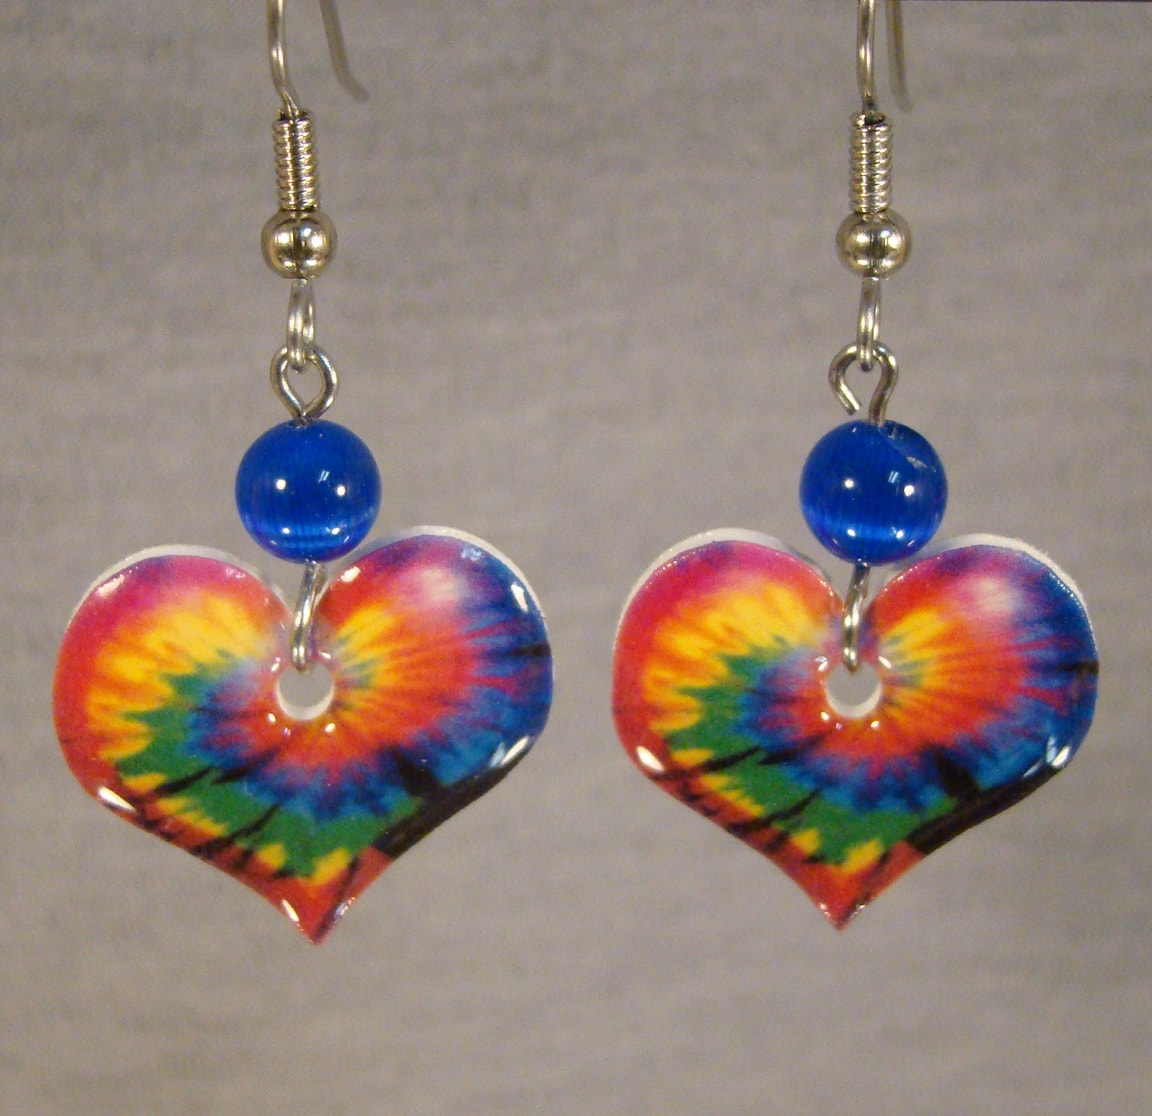 Tie Dye Rainbow Heart Earrings - Lightweight colorful earrings